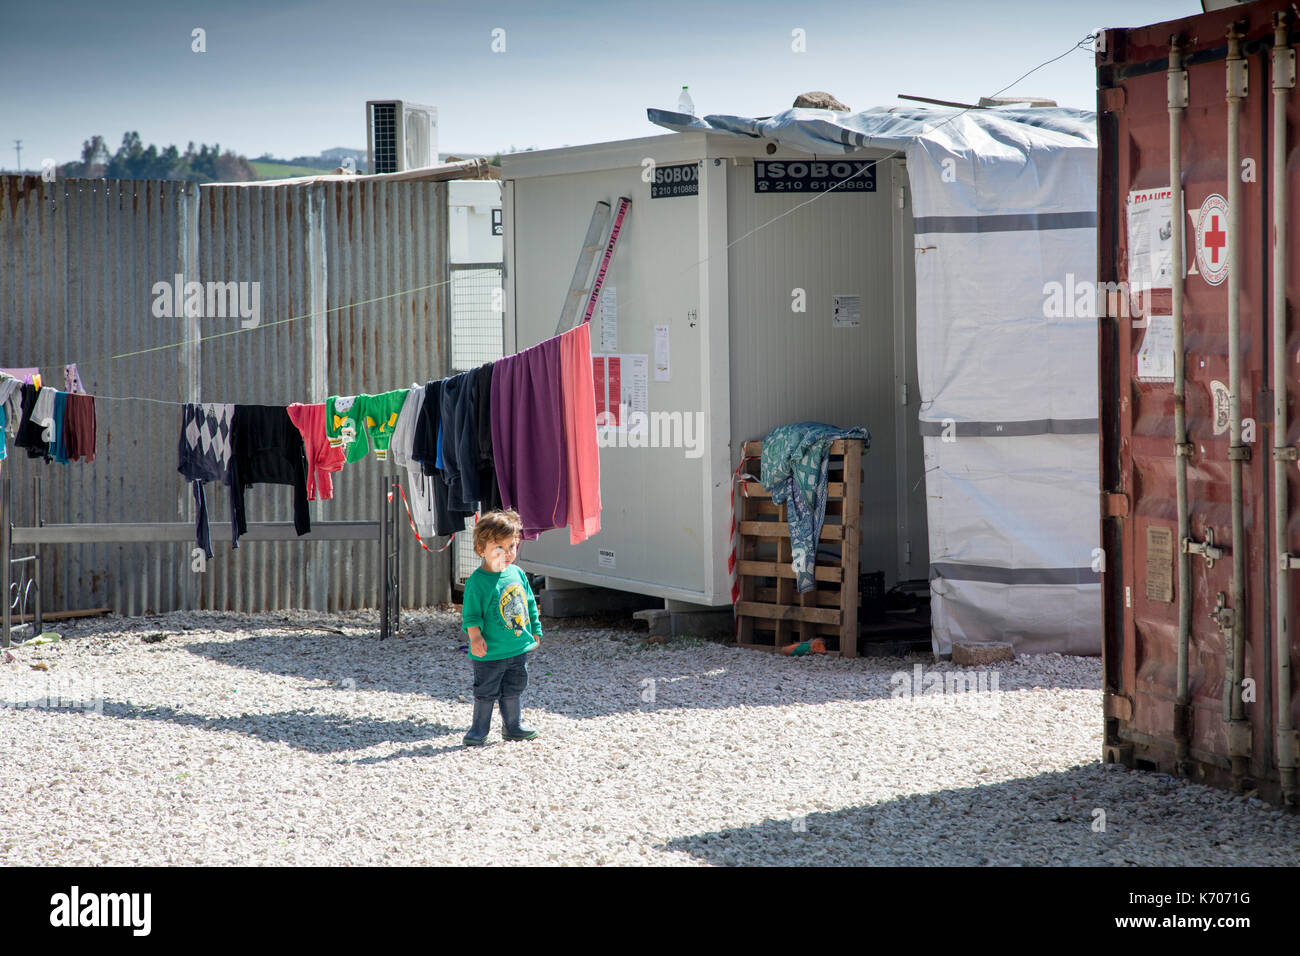 En la grava entre unidades prefabricadas que alojan refugiados de Siria, un niño solitario examina el campamento de refugiados de Ritsona. Primer plano: Un contenedor de Cruz Roja. Foto de stock